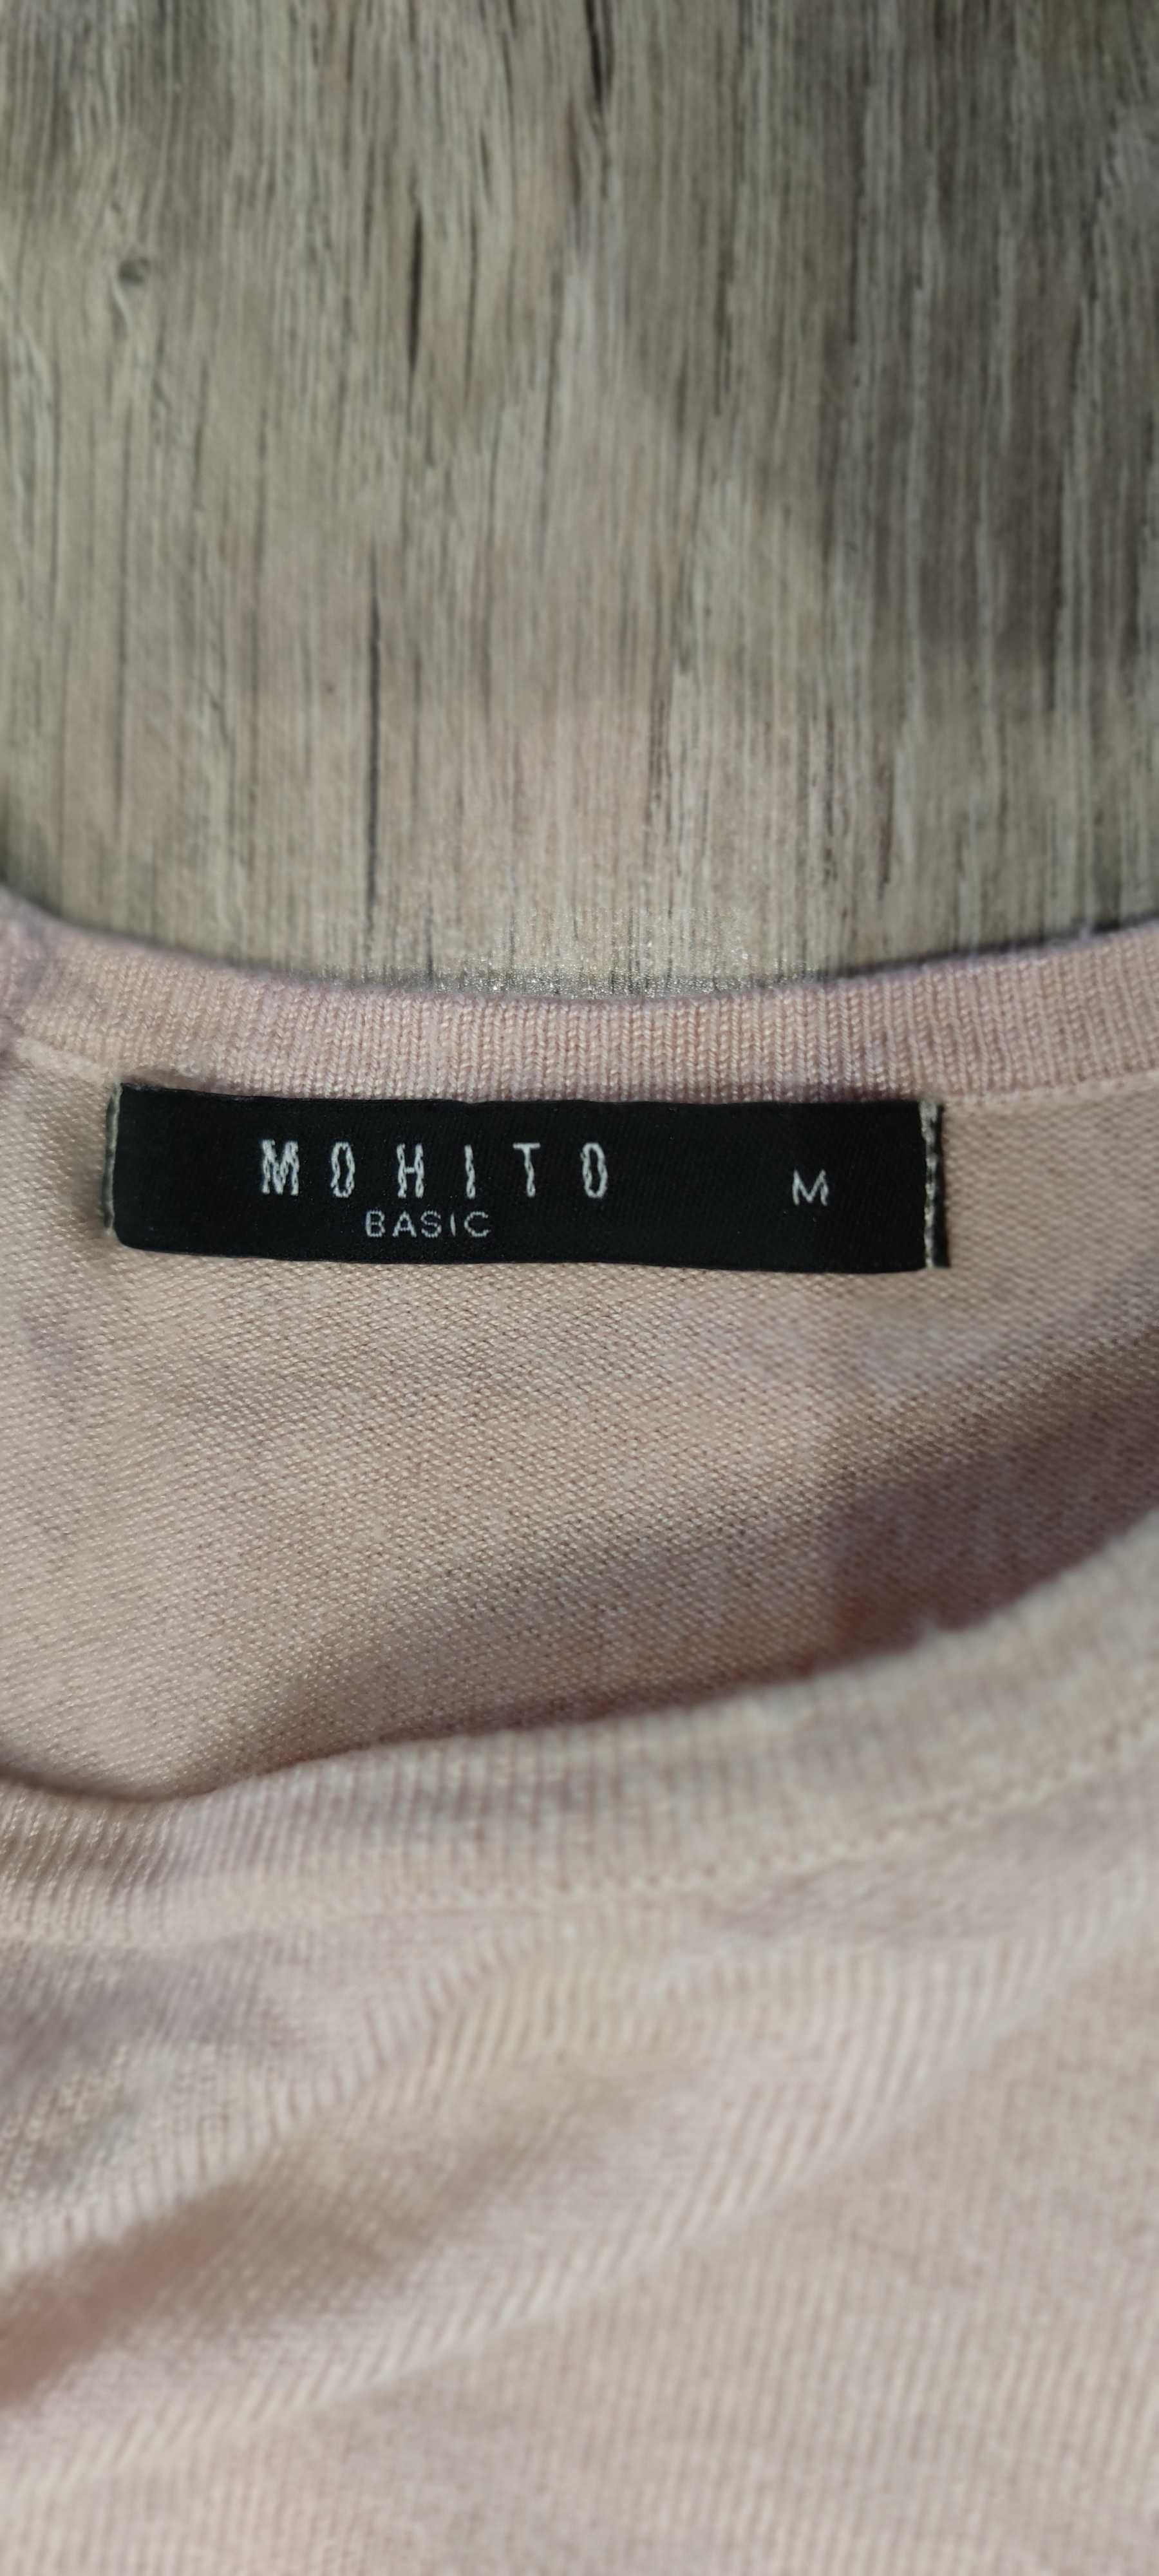 Łososiowy sweterek Mohito M ciążowy